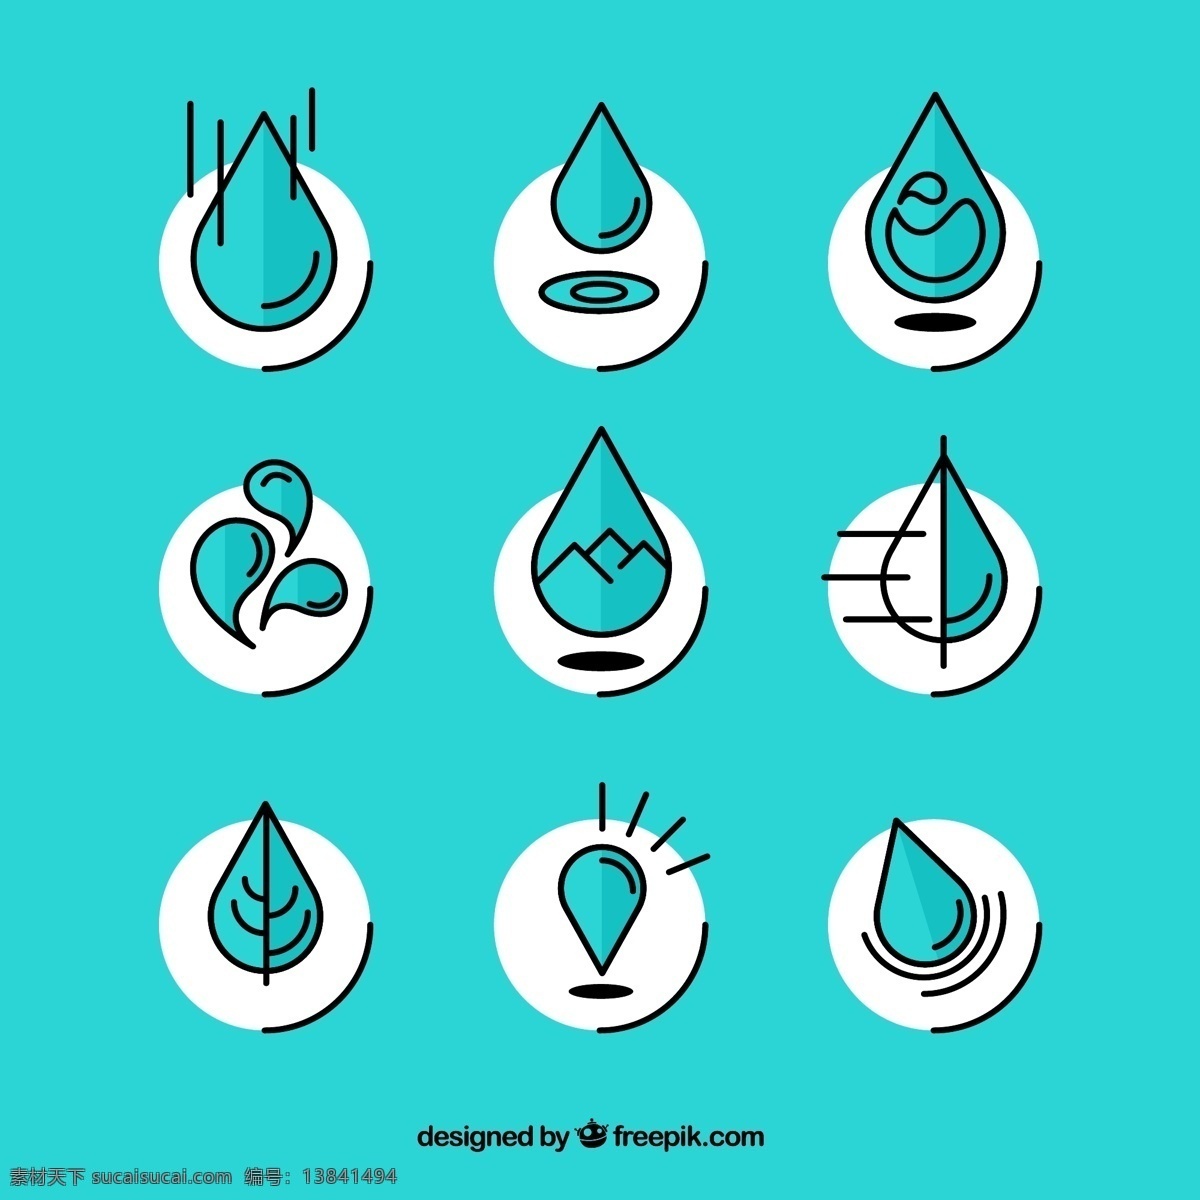 卡通水滴 水滴 水珠 水球 滴水 ps合成图 点阵图 水滴素材 夏季促销